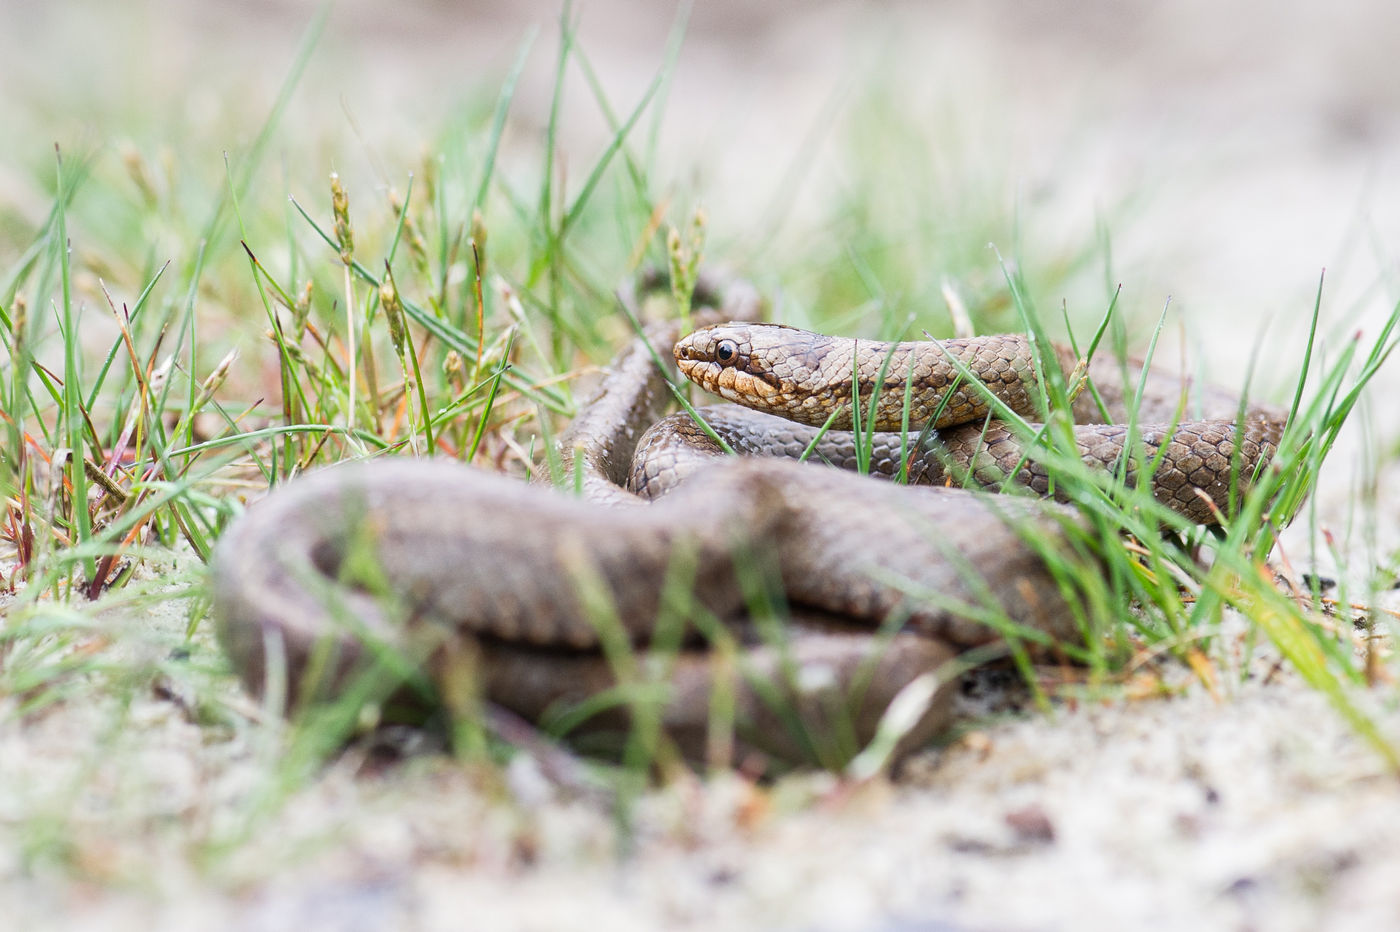 Gladde slangen vind je met wat geluk onder een steen in zandige habitats. © Billy Herman